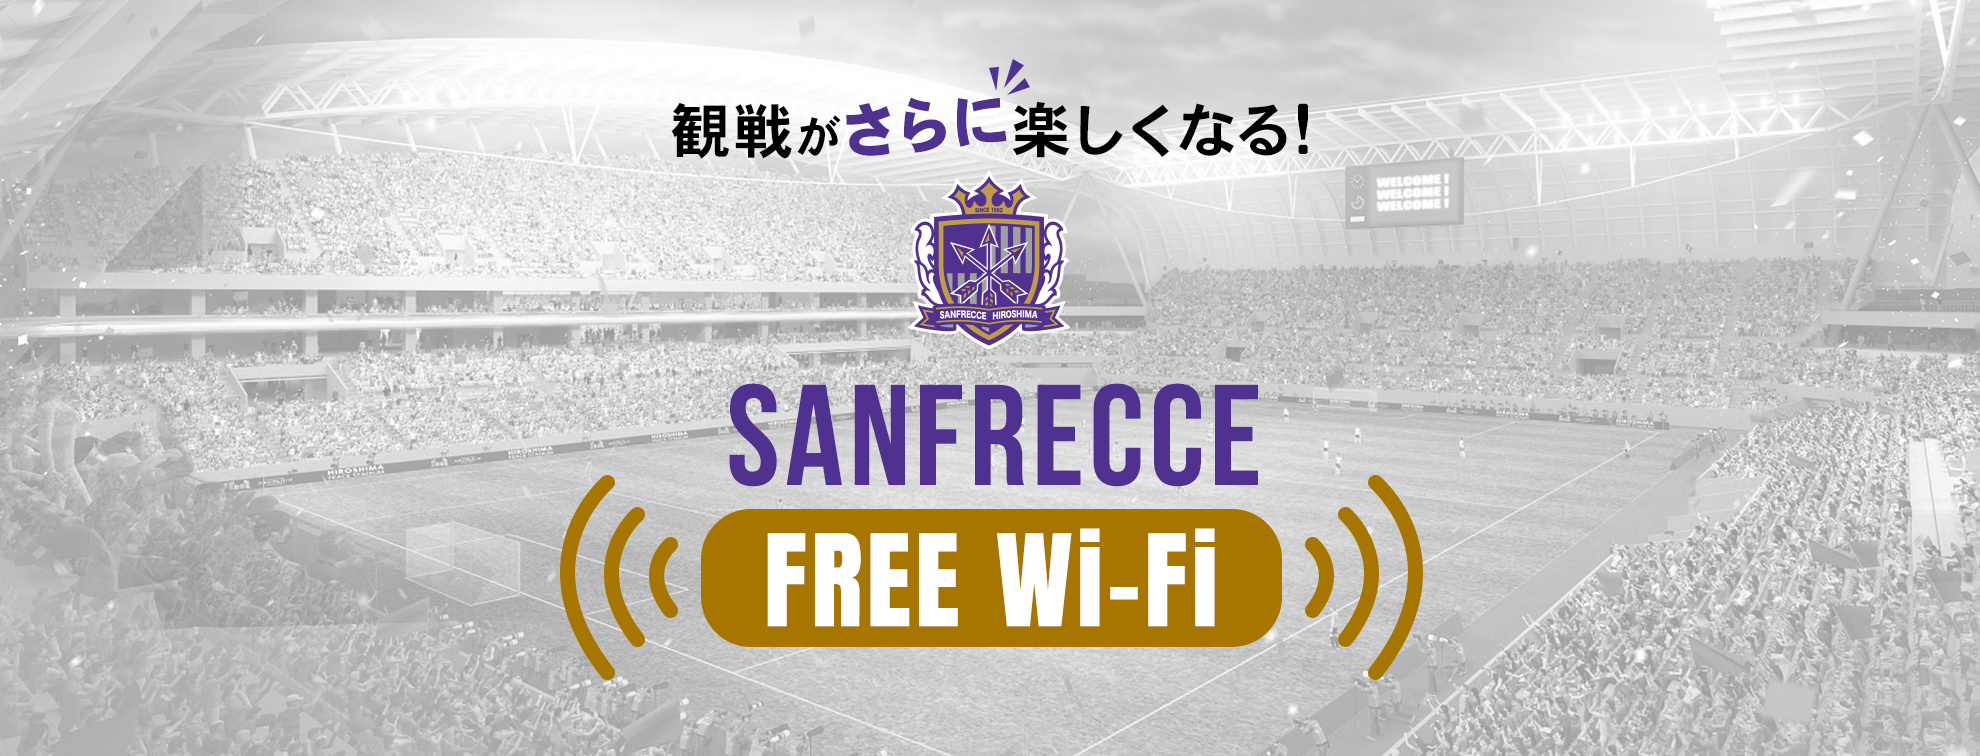 SANFRECCE FREE Wi-Fi